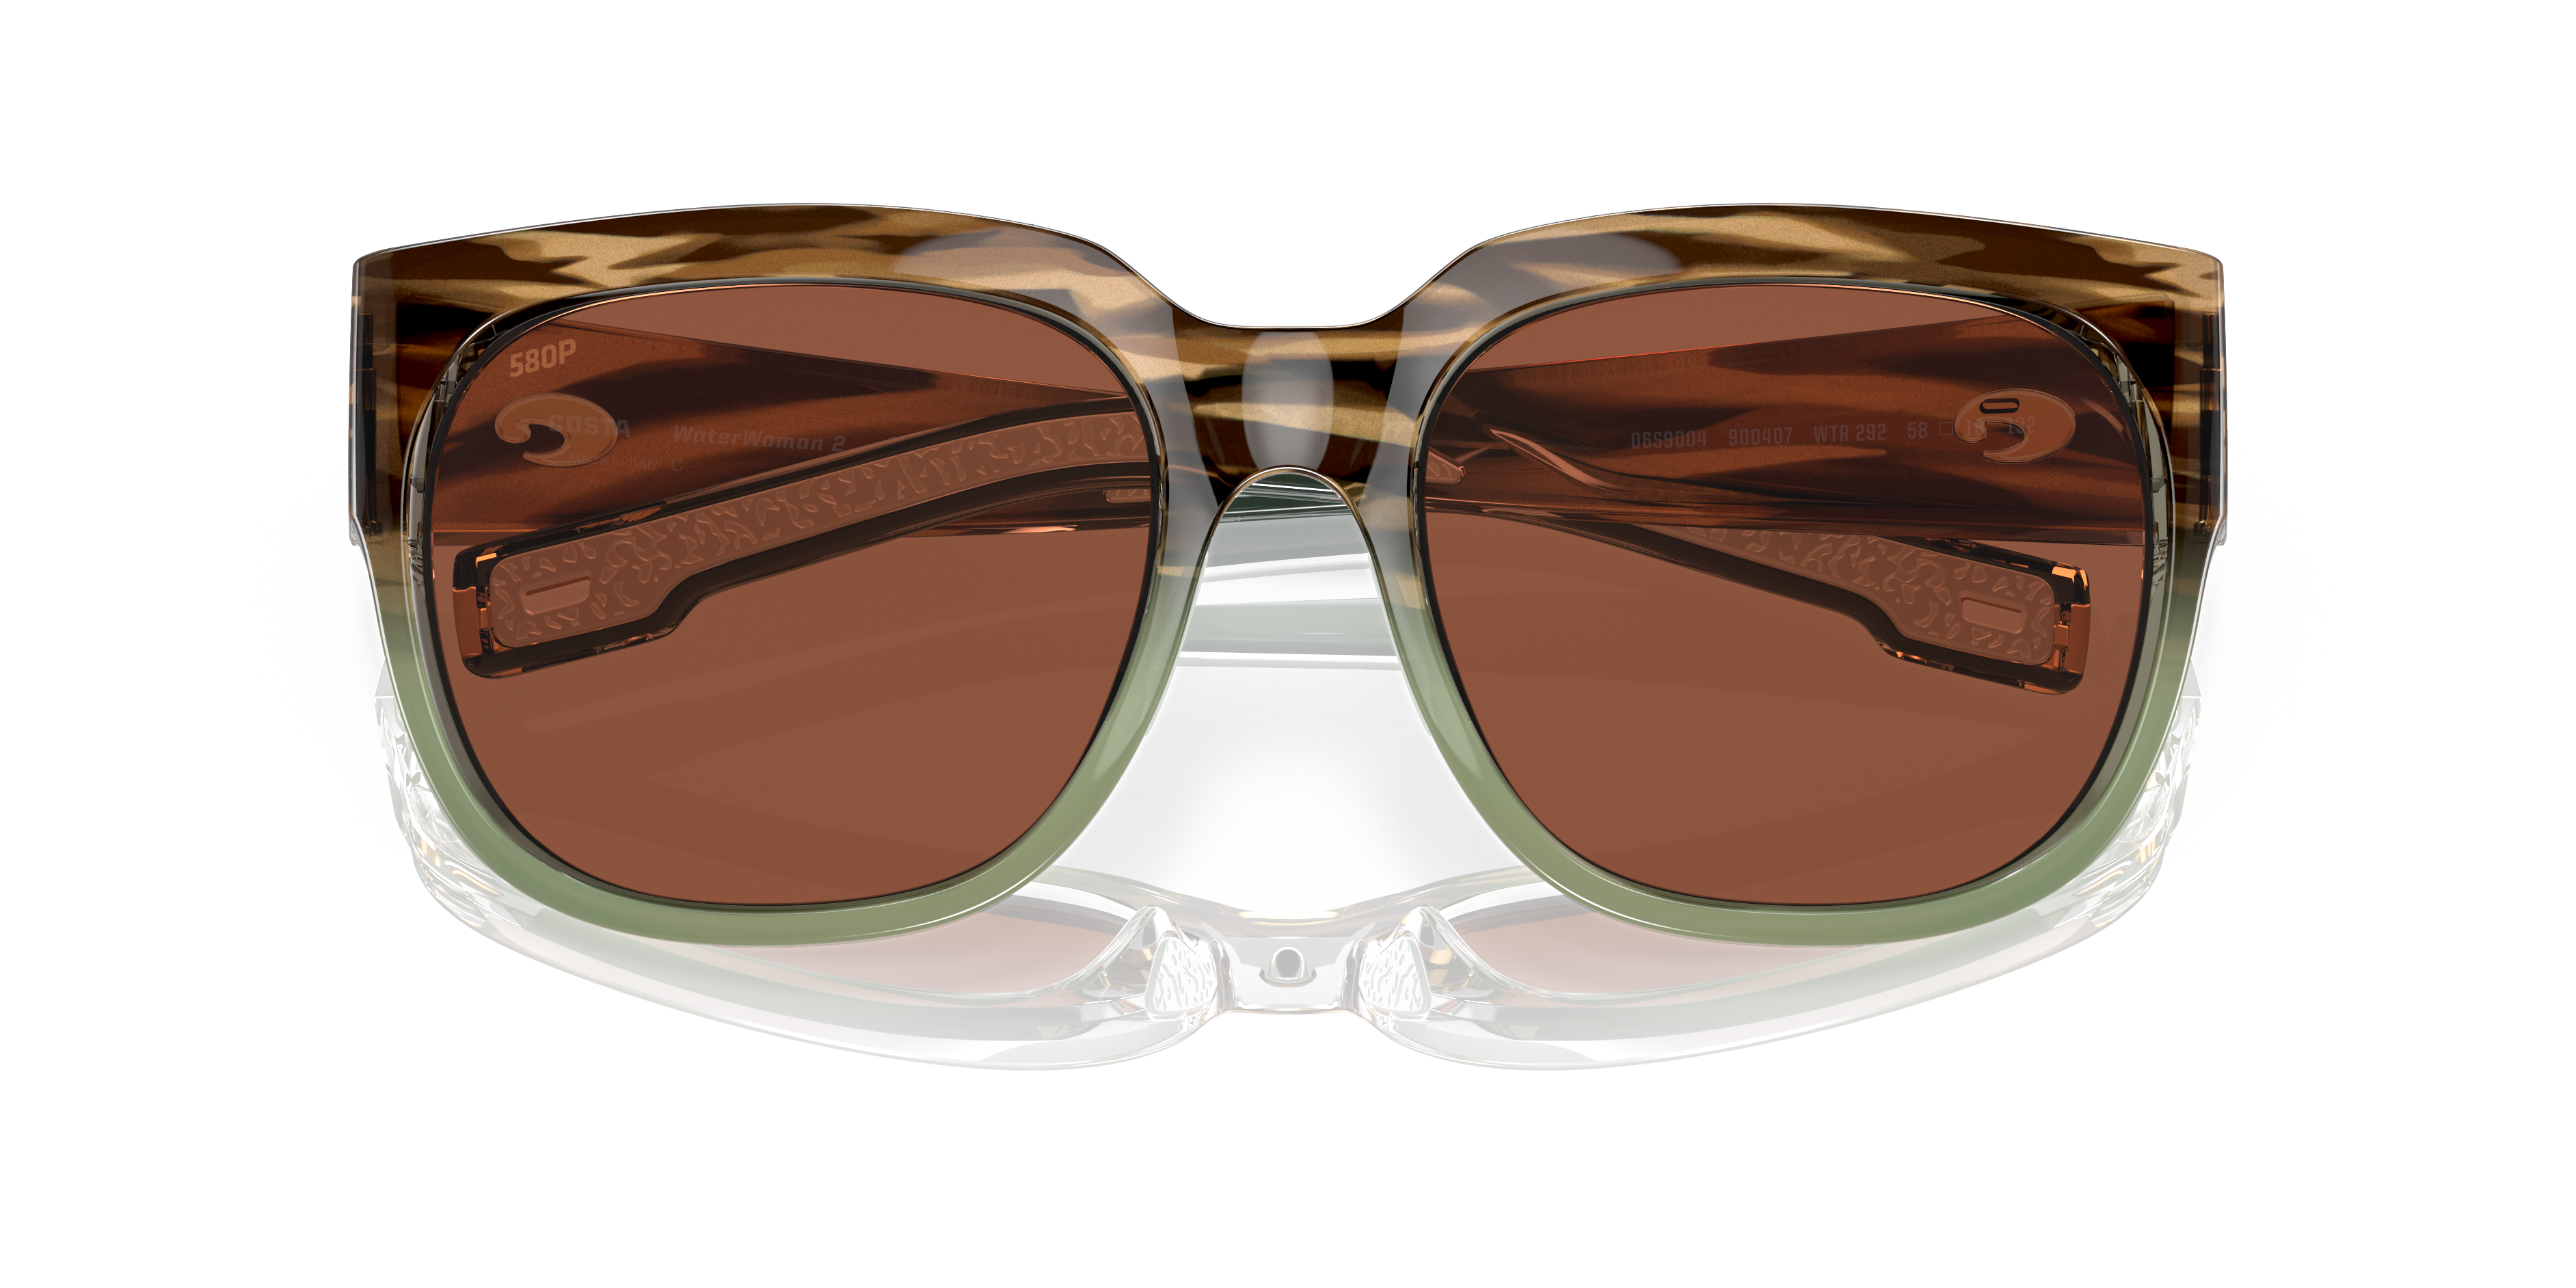 Waterwoman 2 Polarized Sunglasses in Copper | Costa Del Mar®